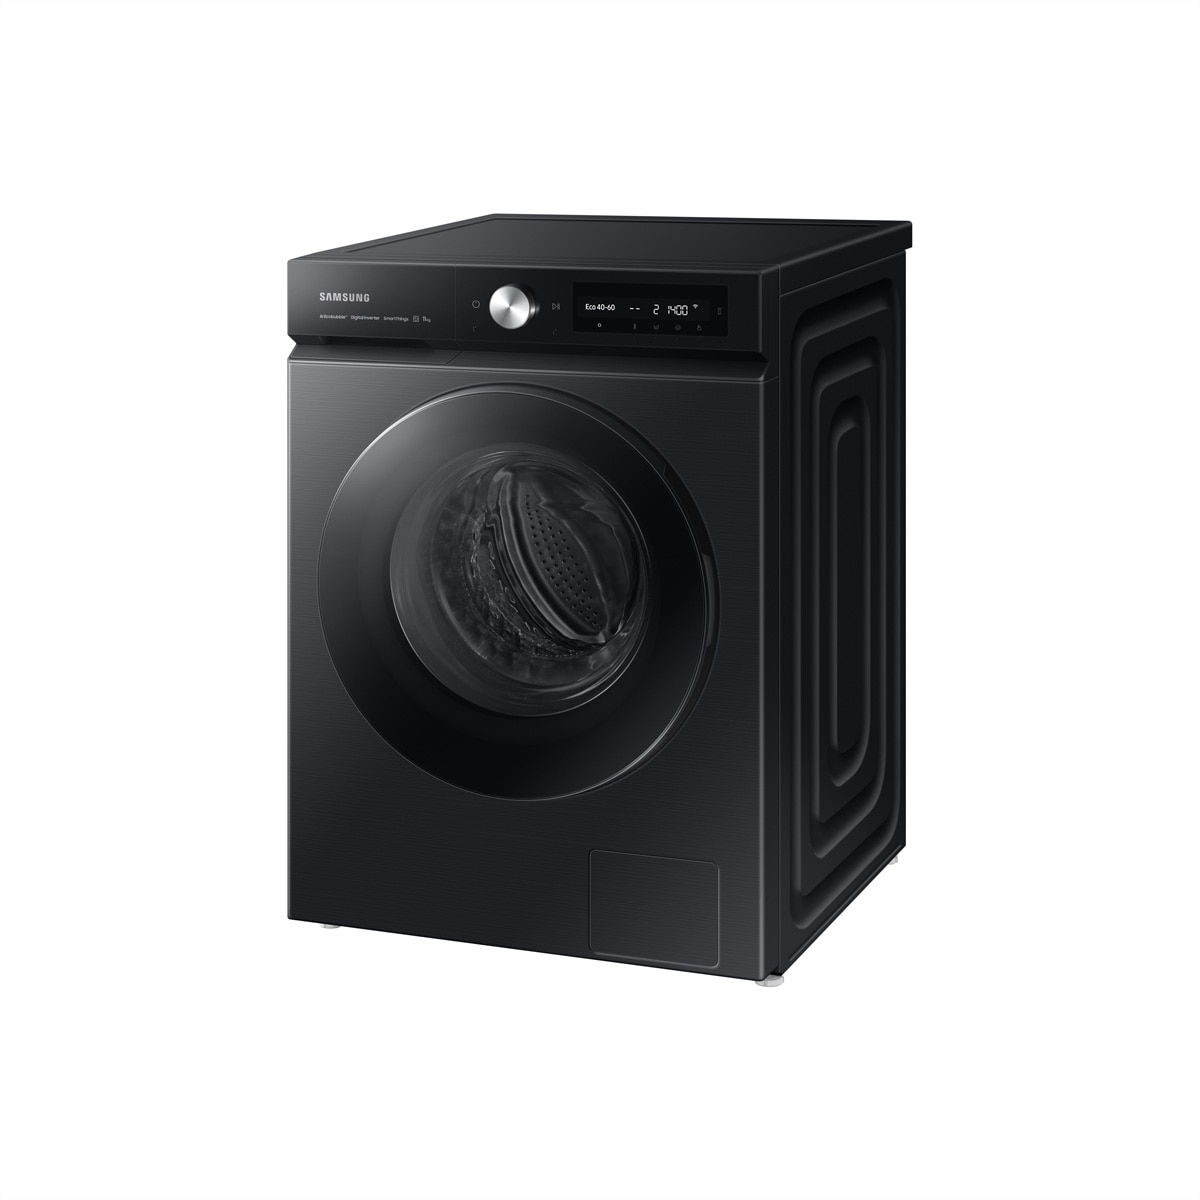 Samsung Waschmaschine »Samsung Waschmaschine WW7400, 11kg, Bespoke Black, WW11BB744AGBS5«, Waschmaschine WW7400